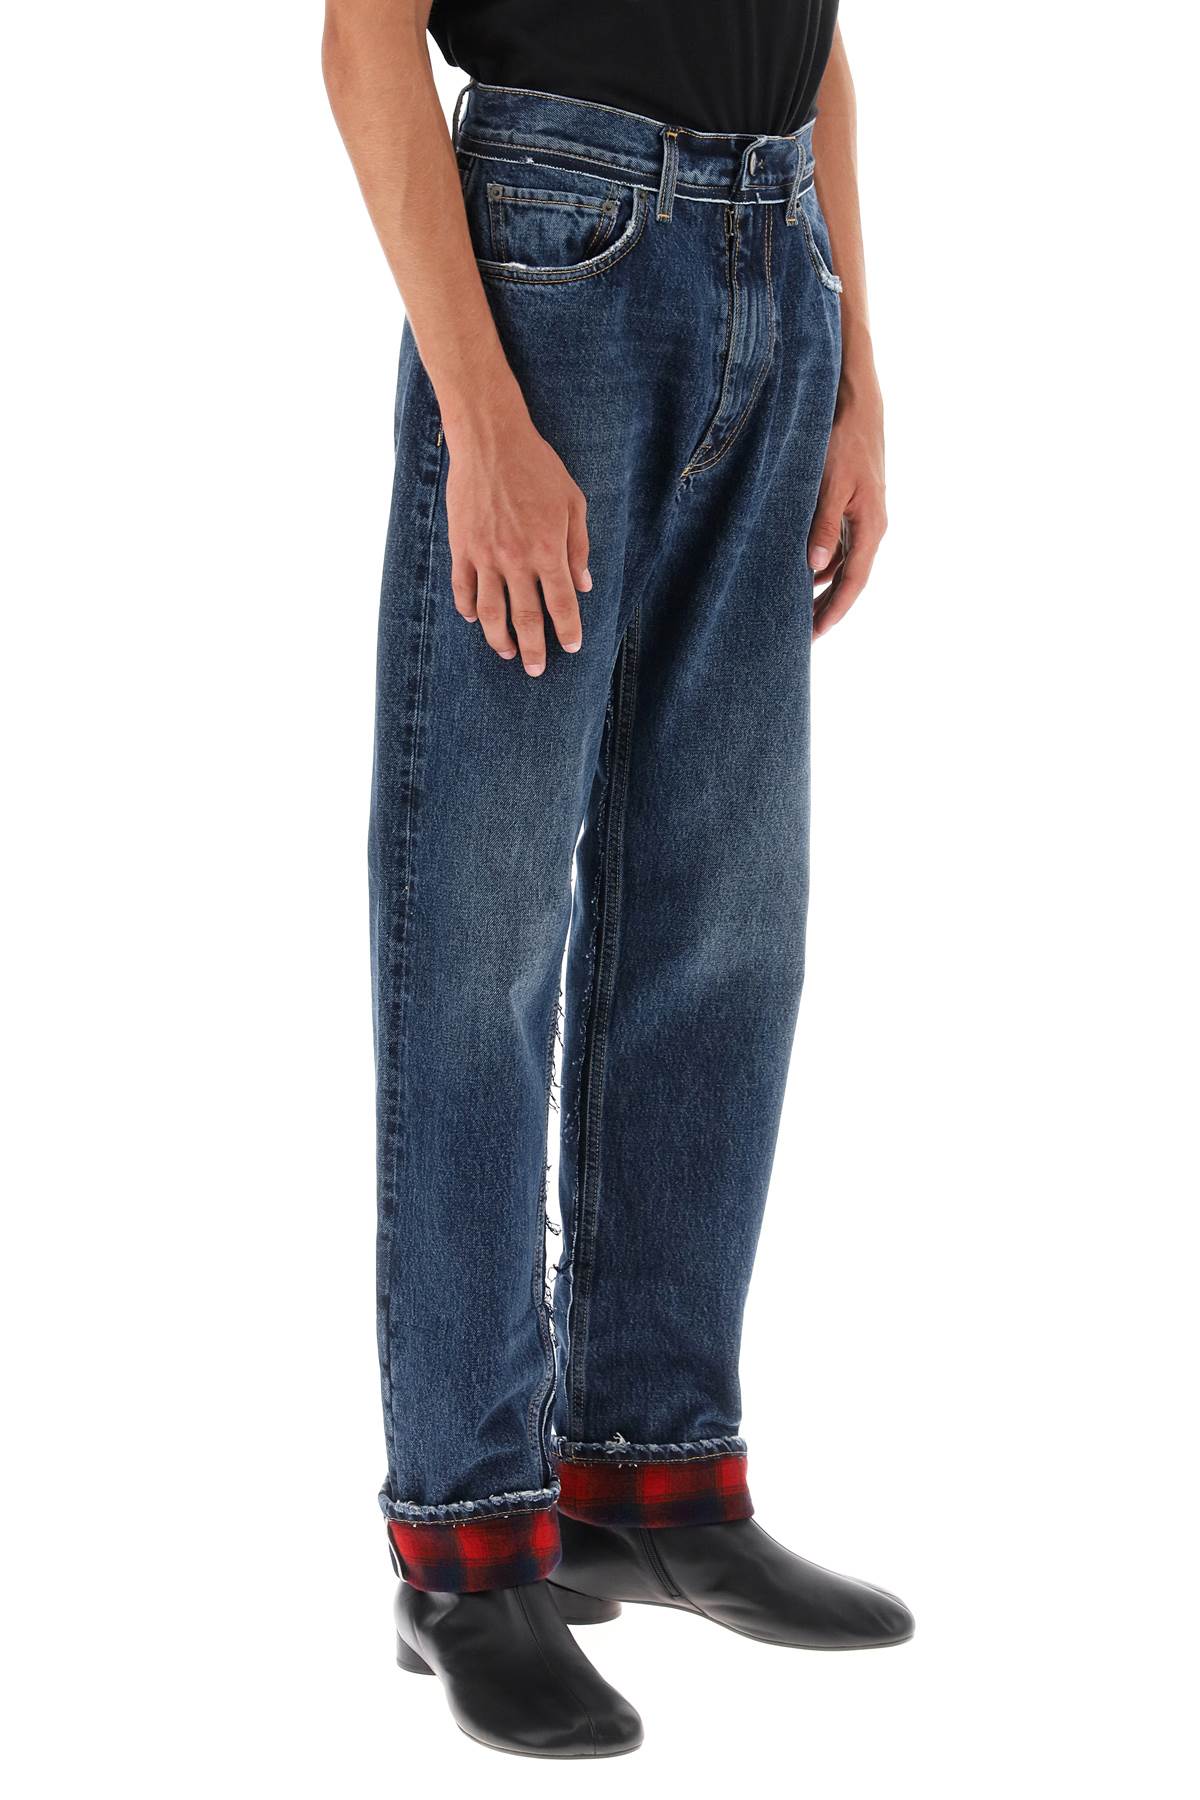 Maison margiela pendleton jeans with inserts-1